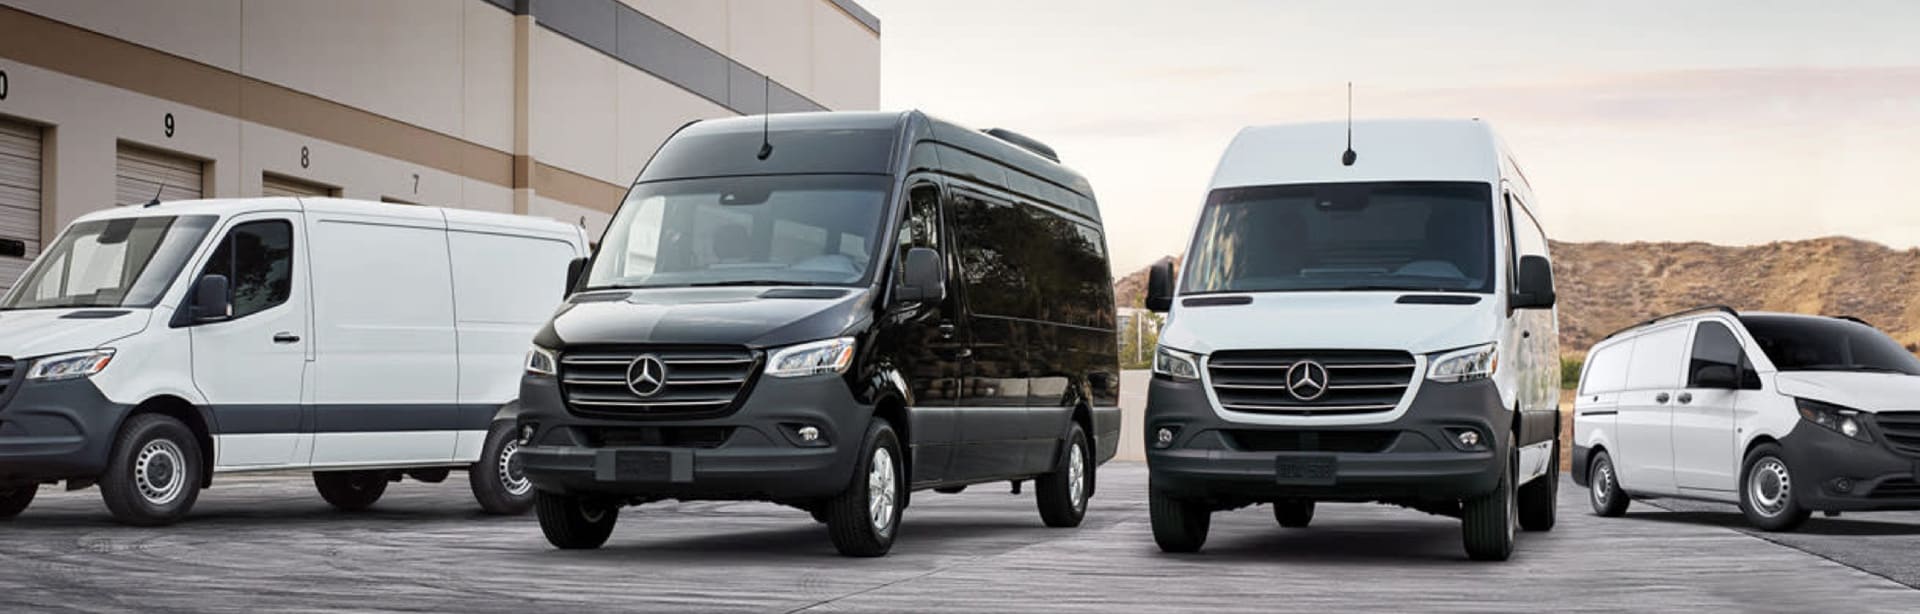 New Mercedes-Benz Commercial Vans in Savannah, GA